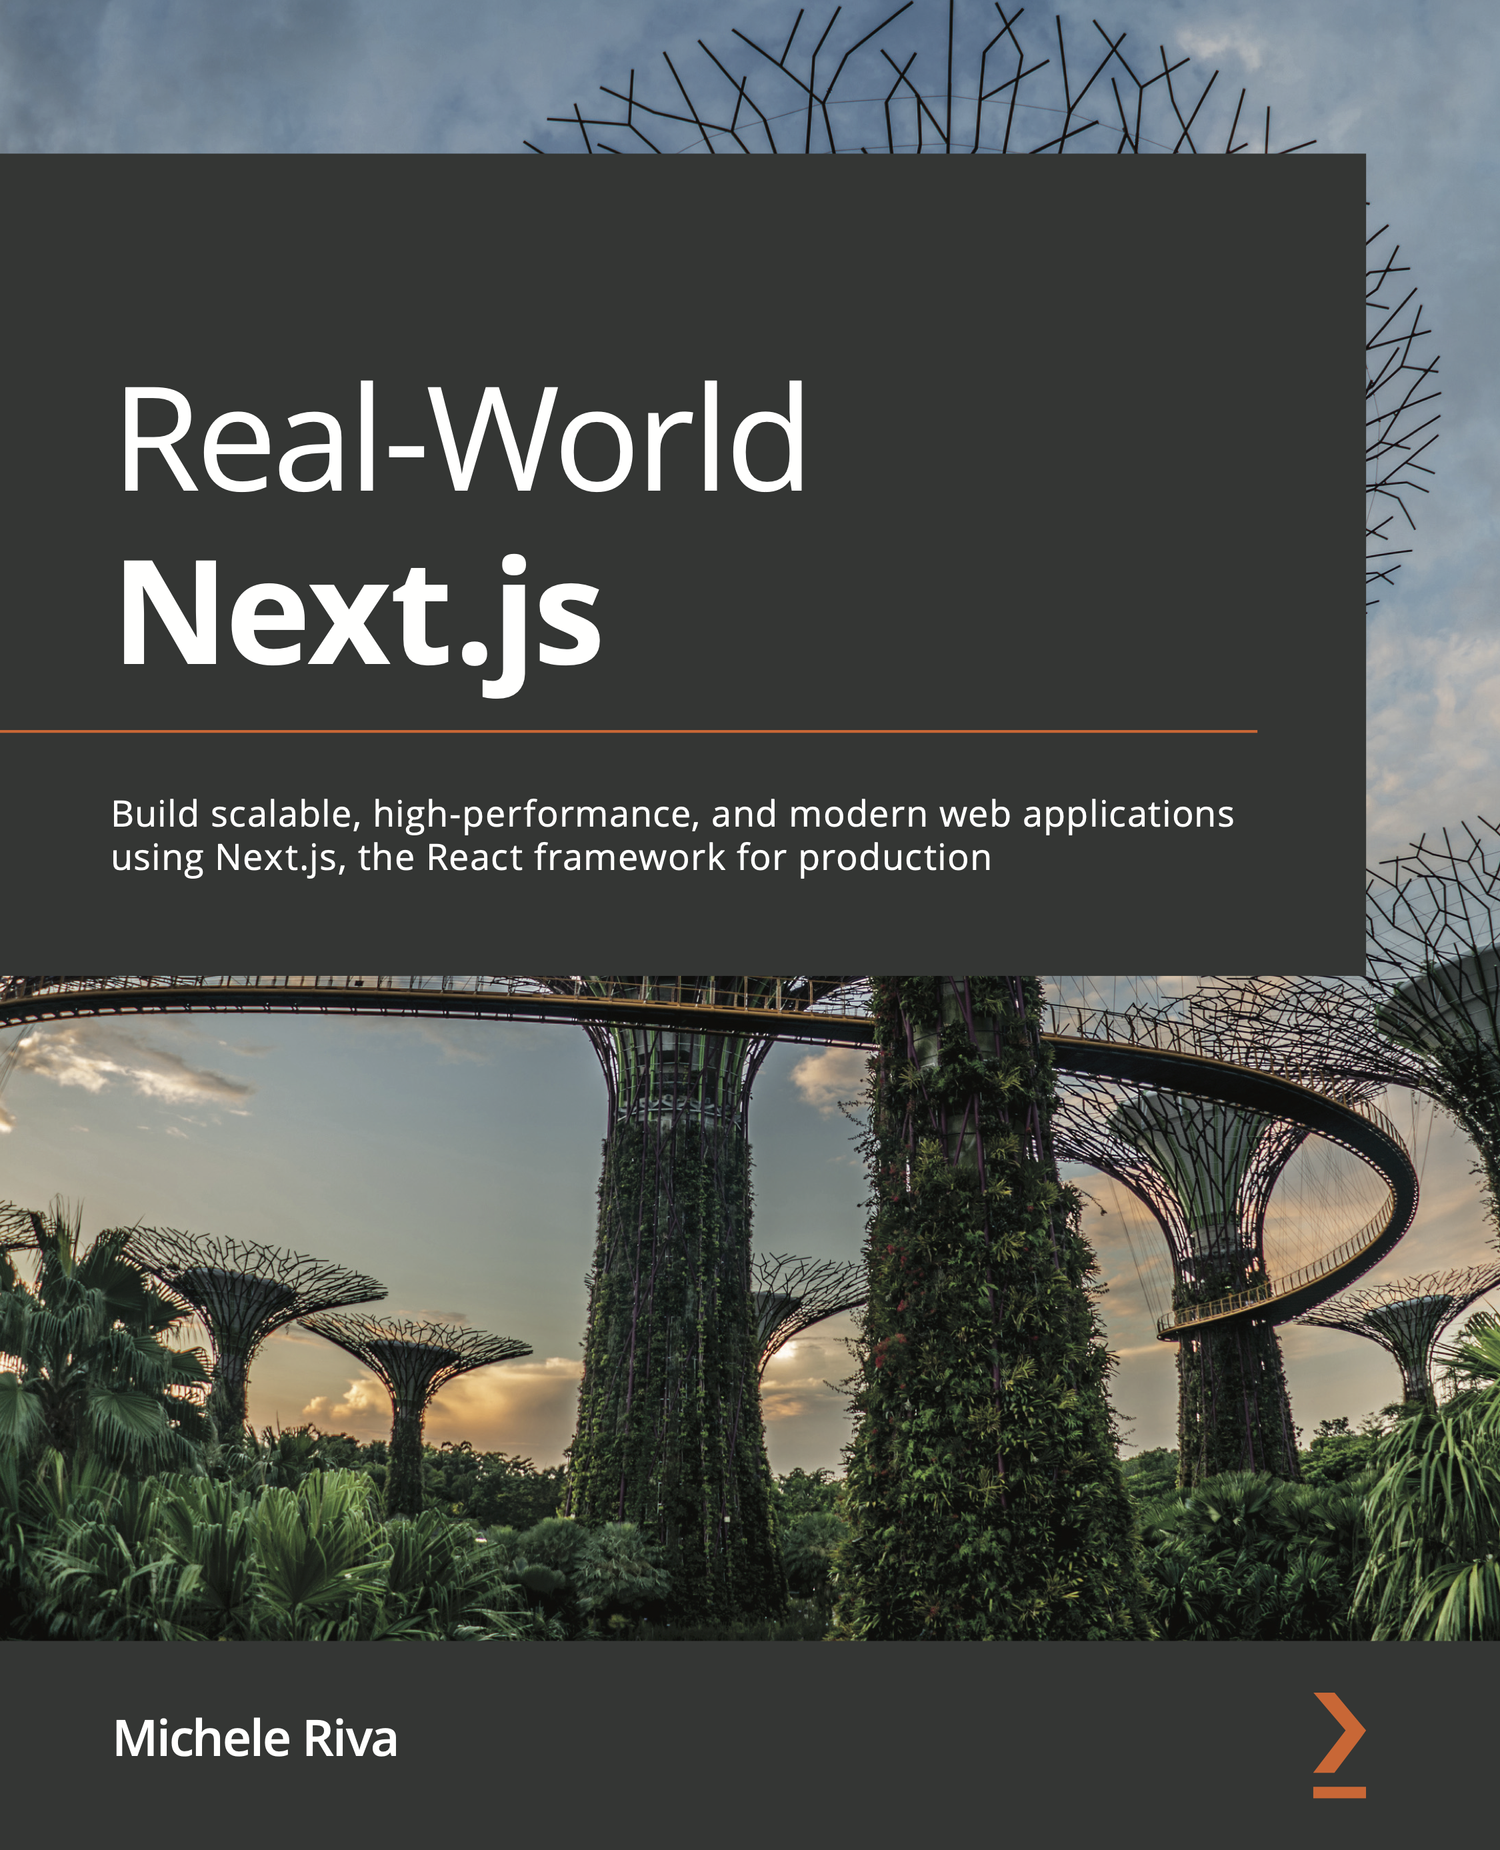 Real-World Next.js, written by Michele Riva